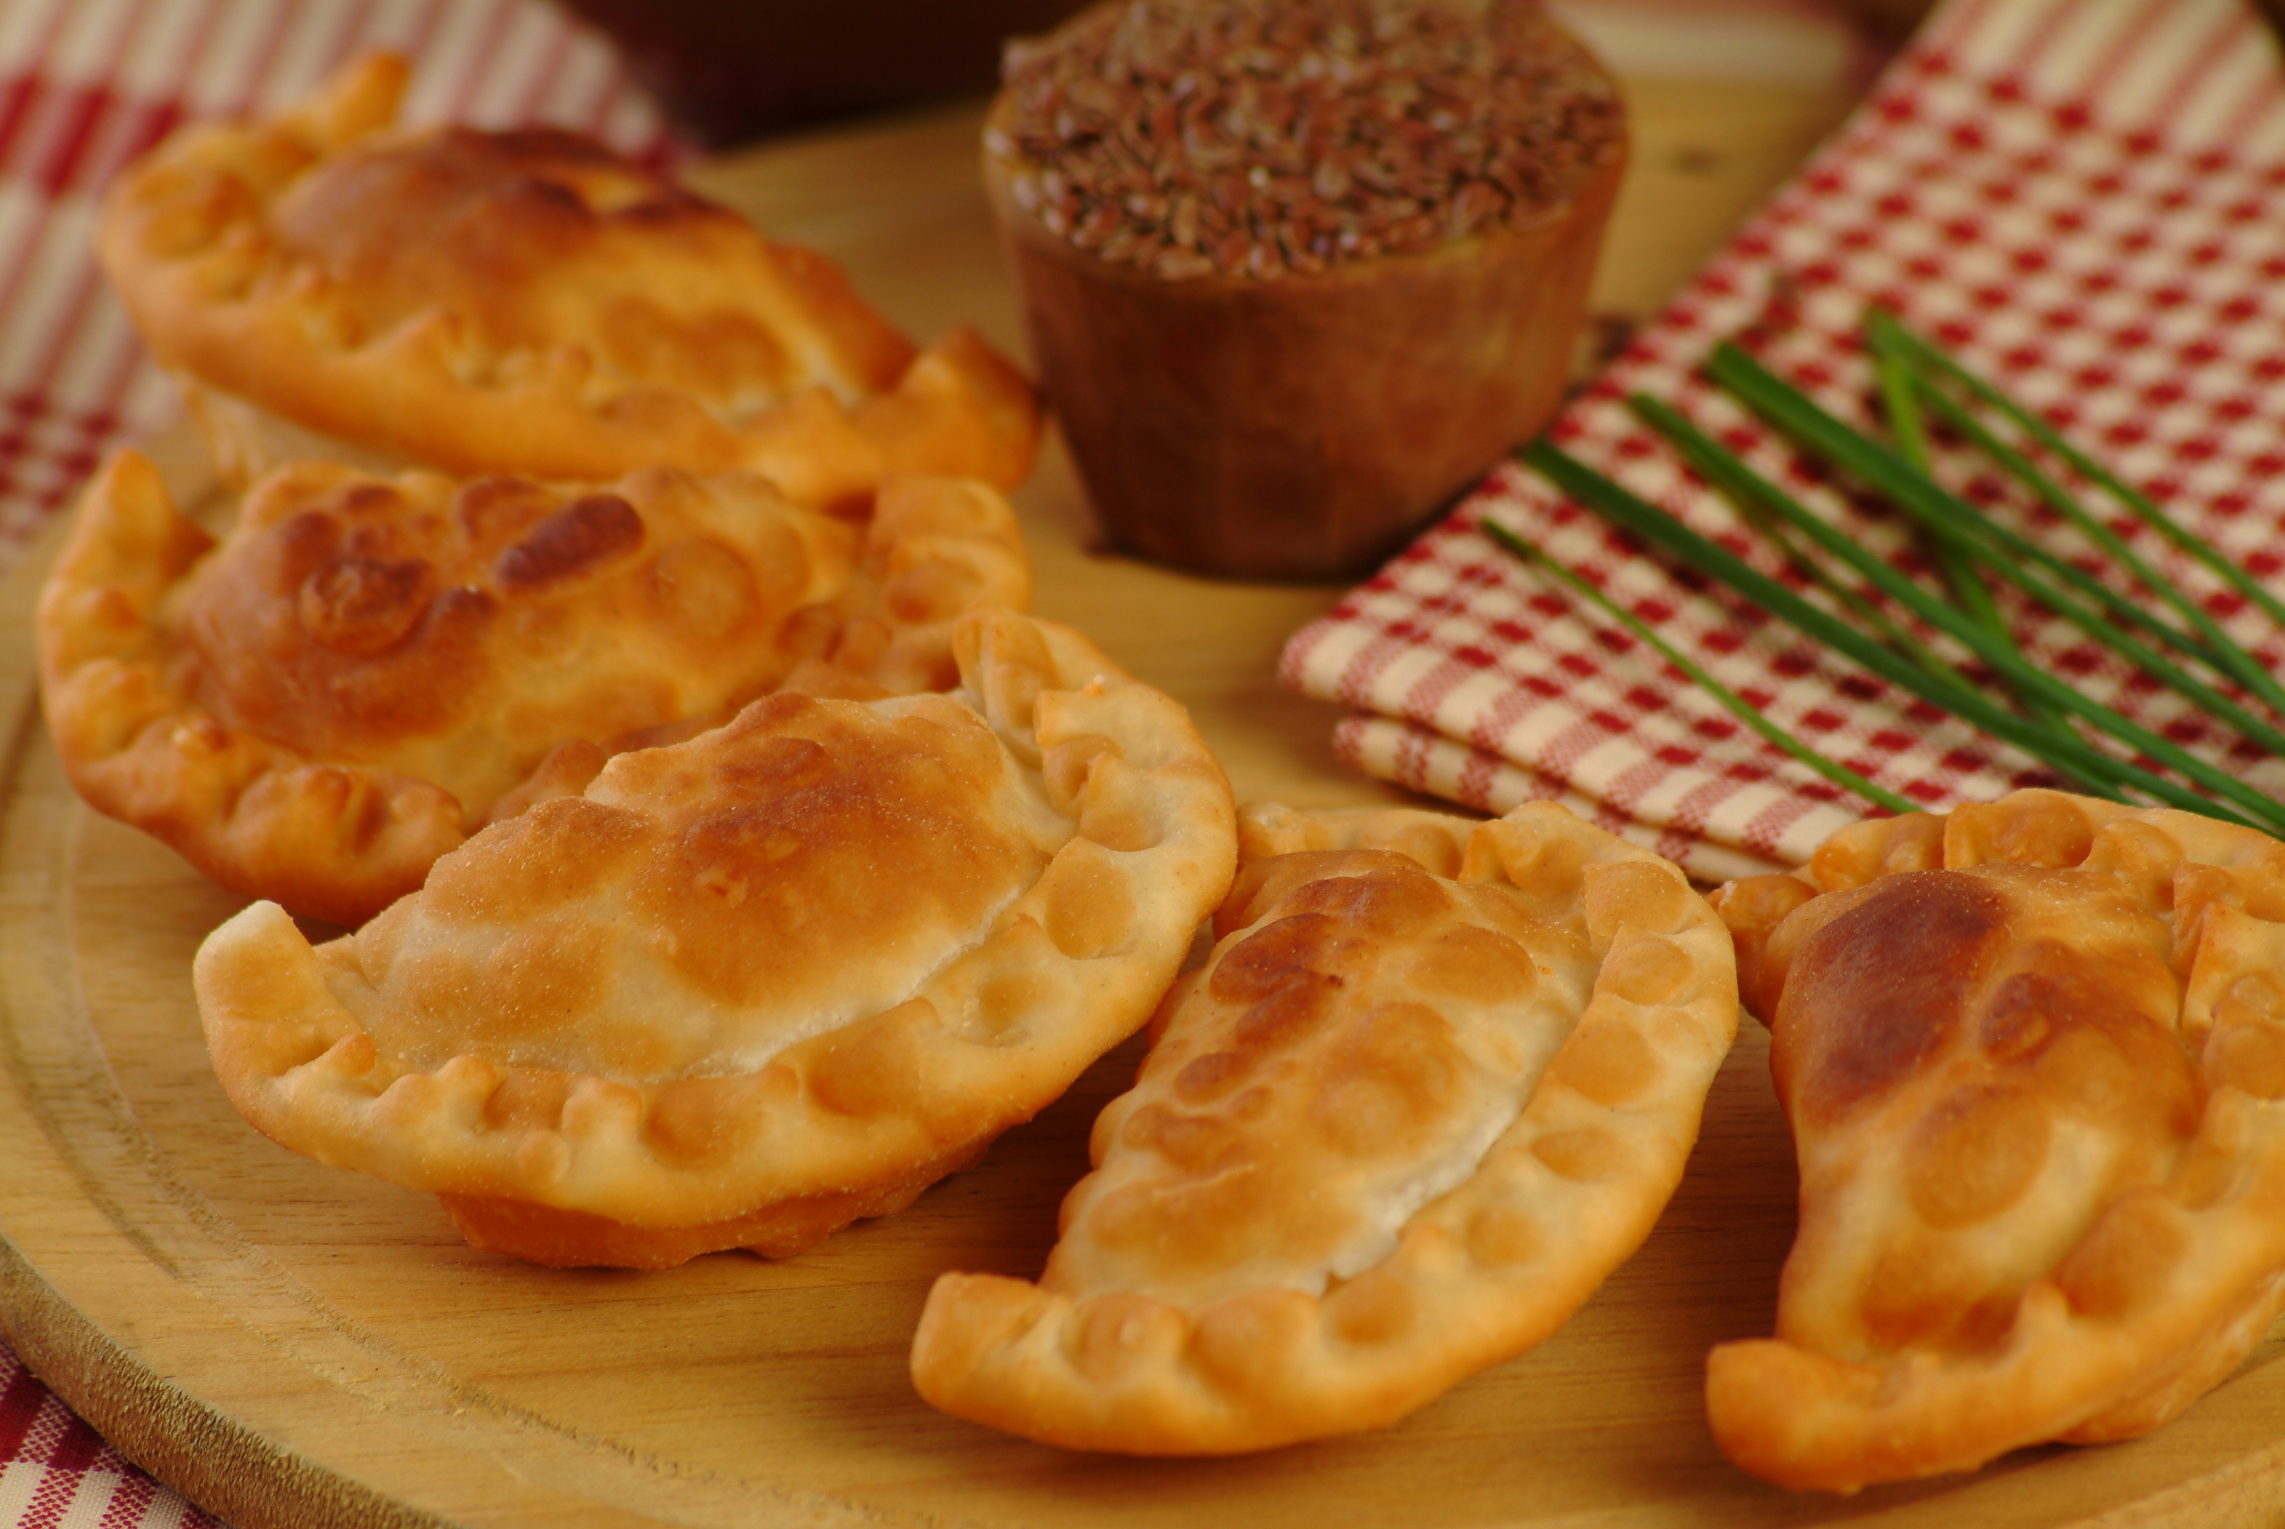 Receta: Empanadillas de morcilla y manzana caramelizada | Recetas DIA